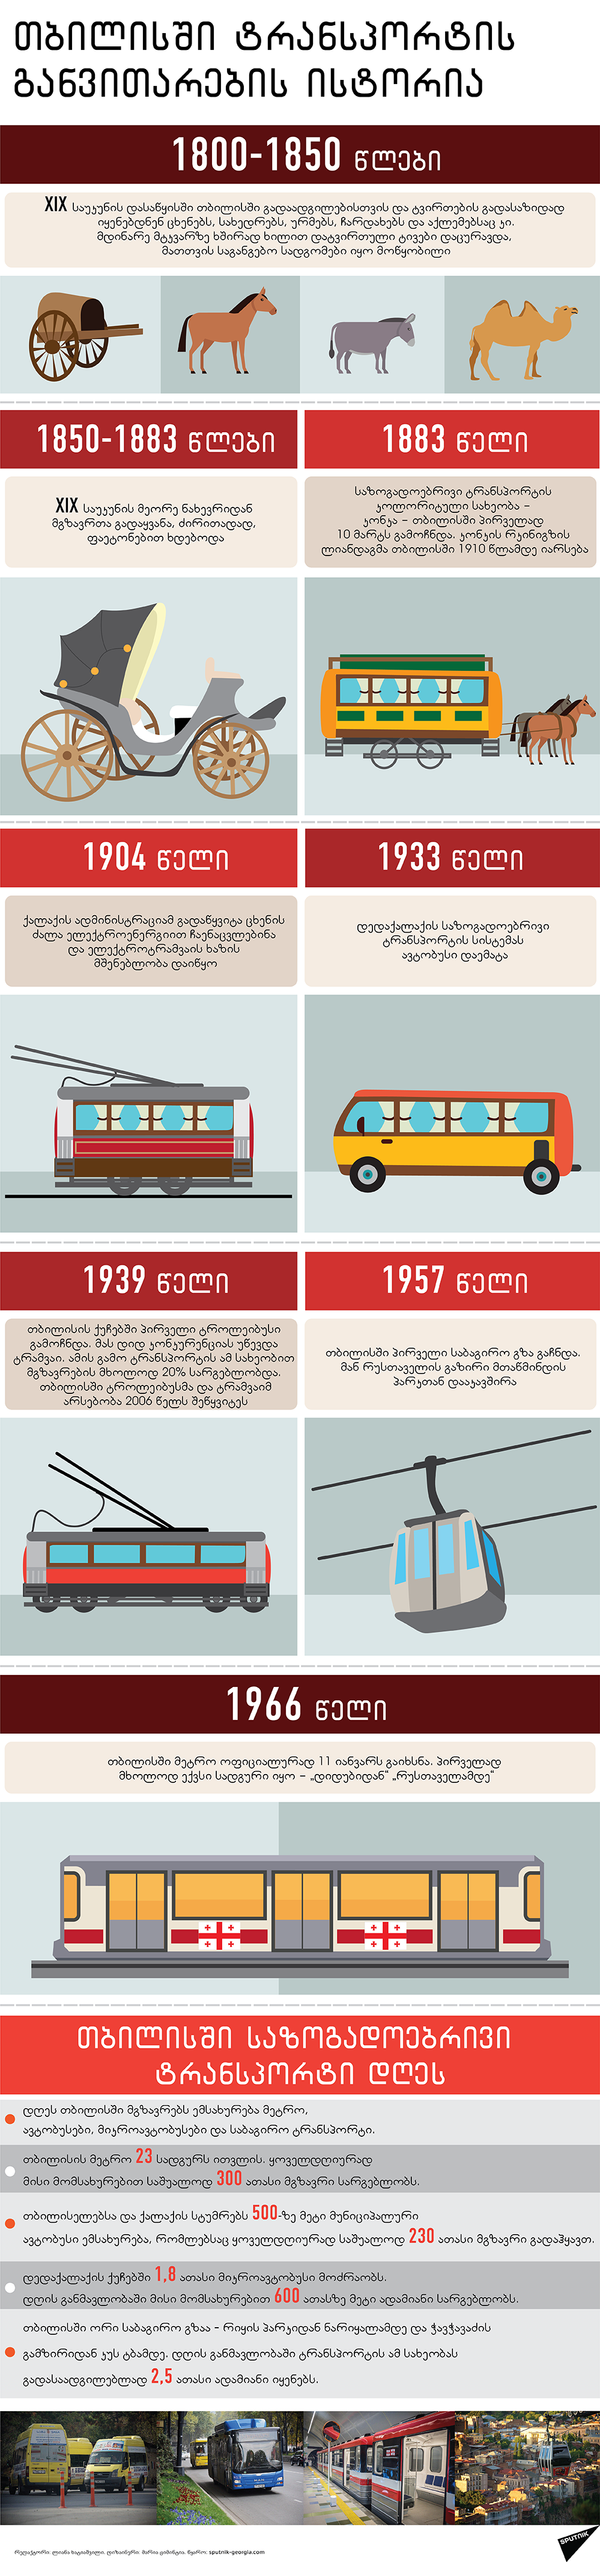 თბილისში ტრანსპორტის განვითარების ისტორია - Sputnik საქართველო